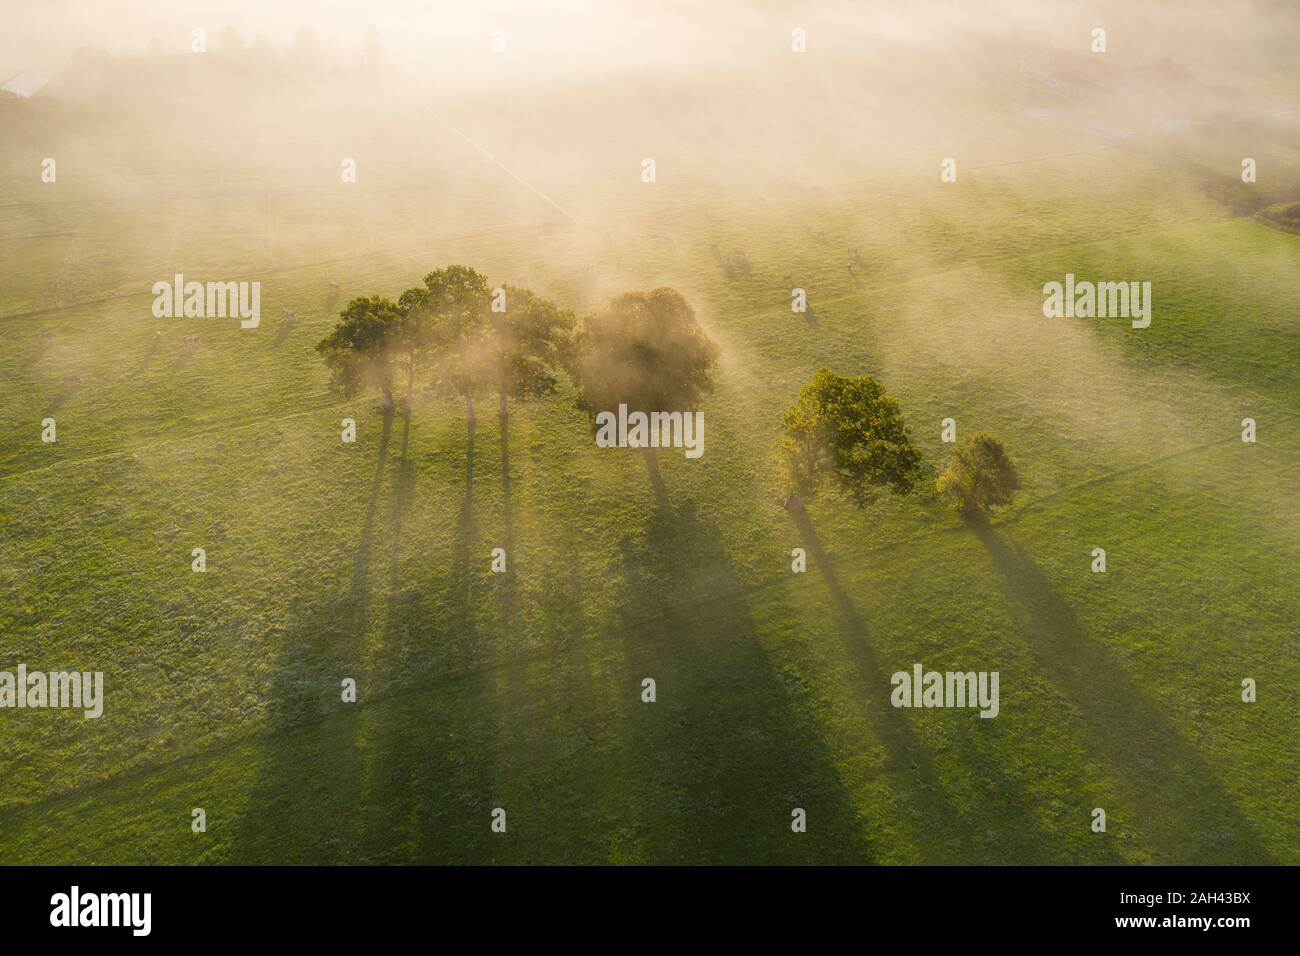 Deutschland, Oberbayern, Greiling, Luftaufnahme von Feld und Bäume im Nebel bei Sonnenaufgang Stockfoto